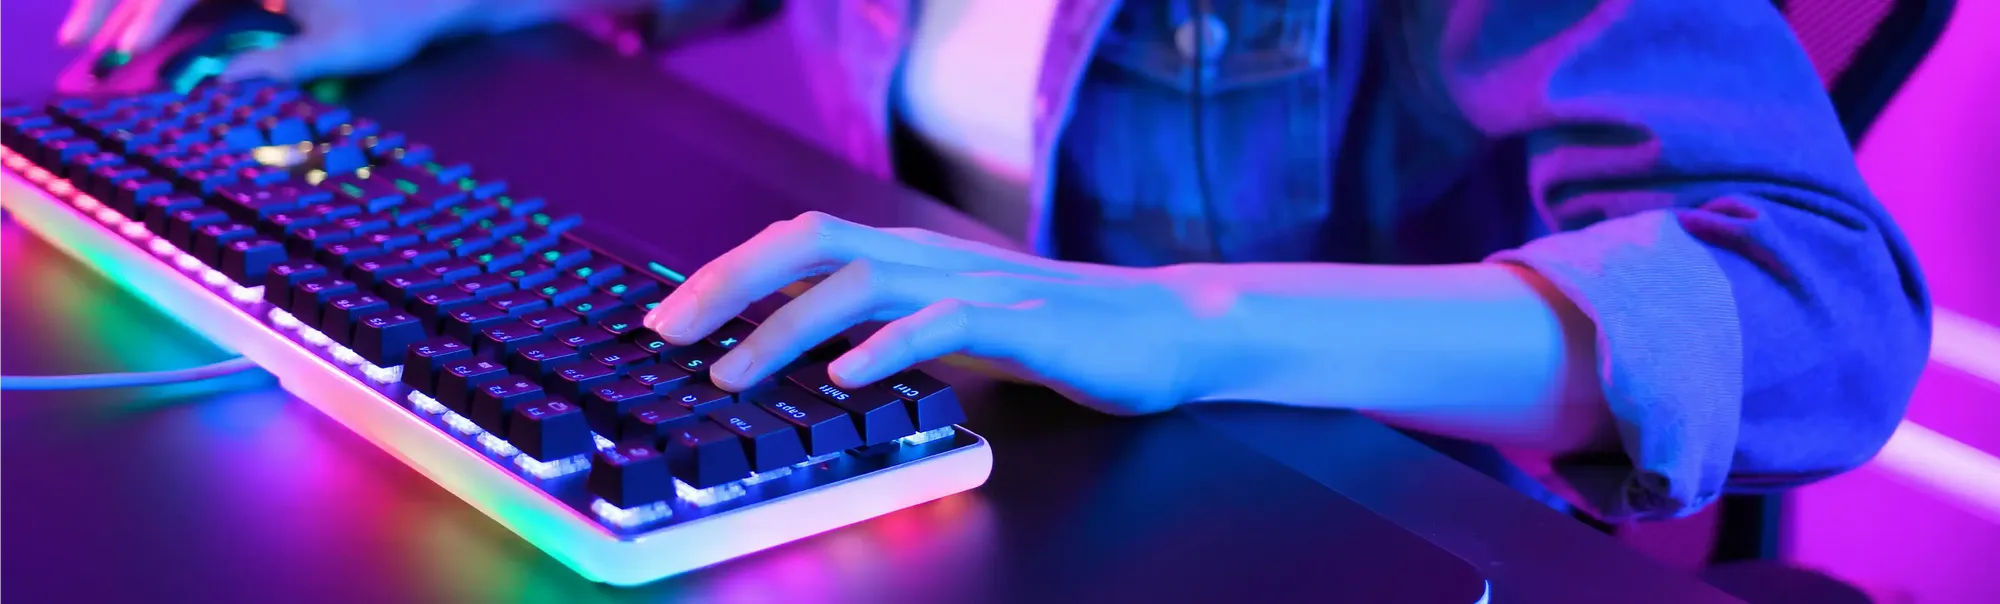 Melhor teclado gamer barato para comprar em 2022: veja 8 modelos